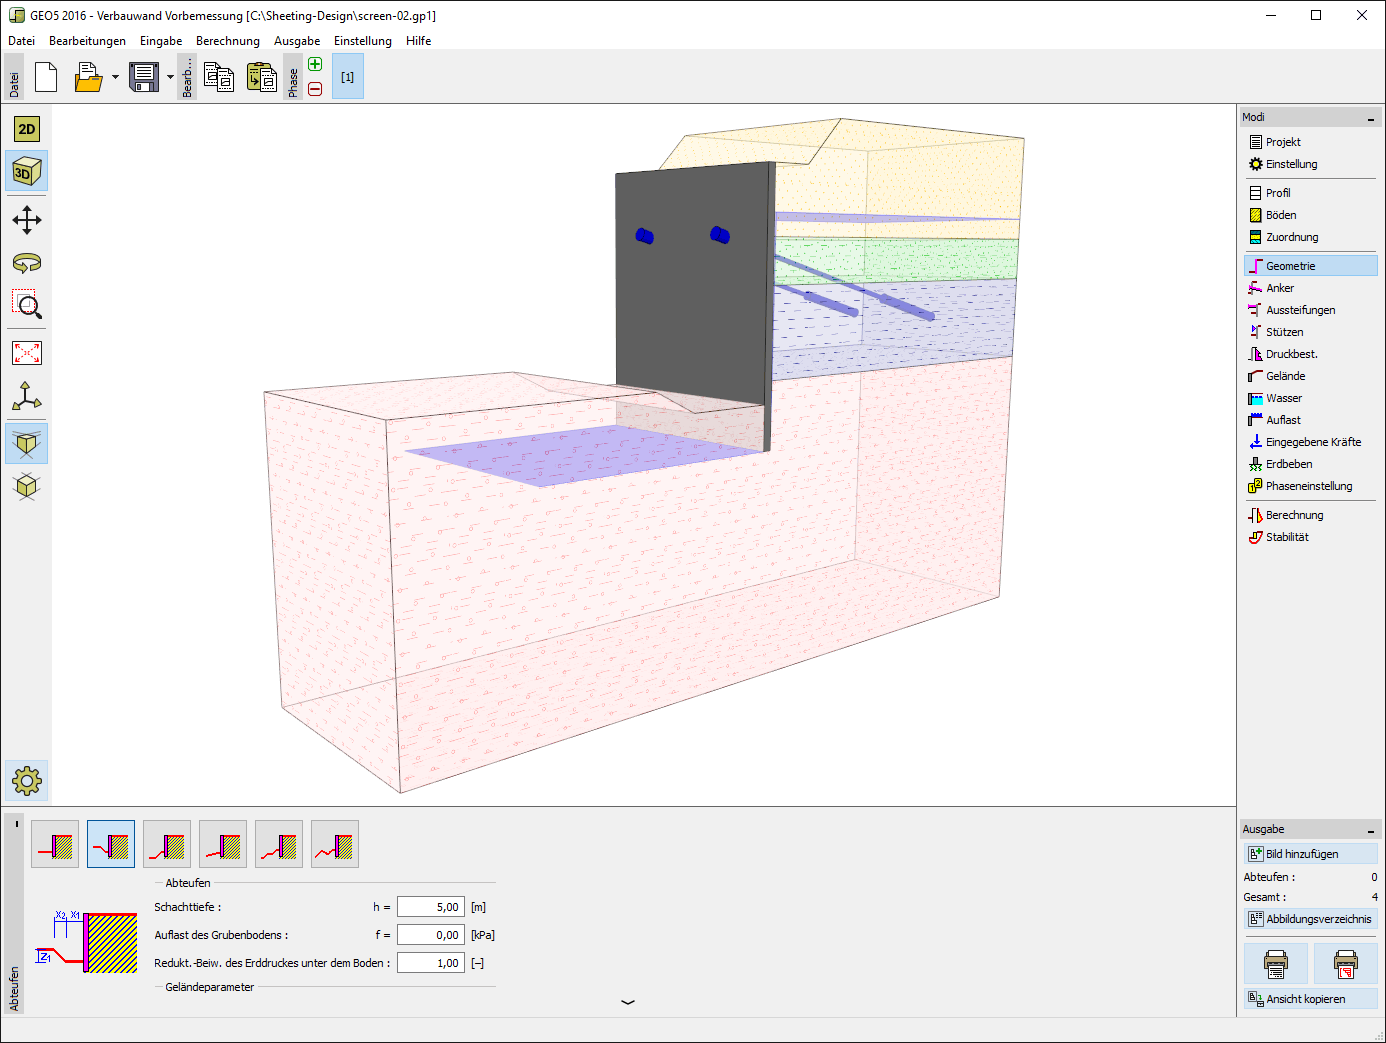 Verbauwand Vorbemessung : 3D Eingabe der Geometrie von Gräben, Verbauwand und anderen Parametern